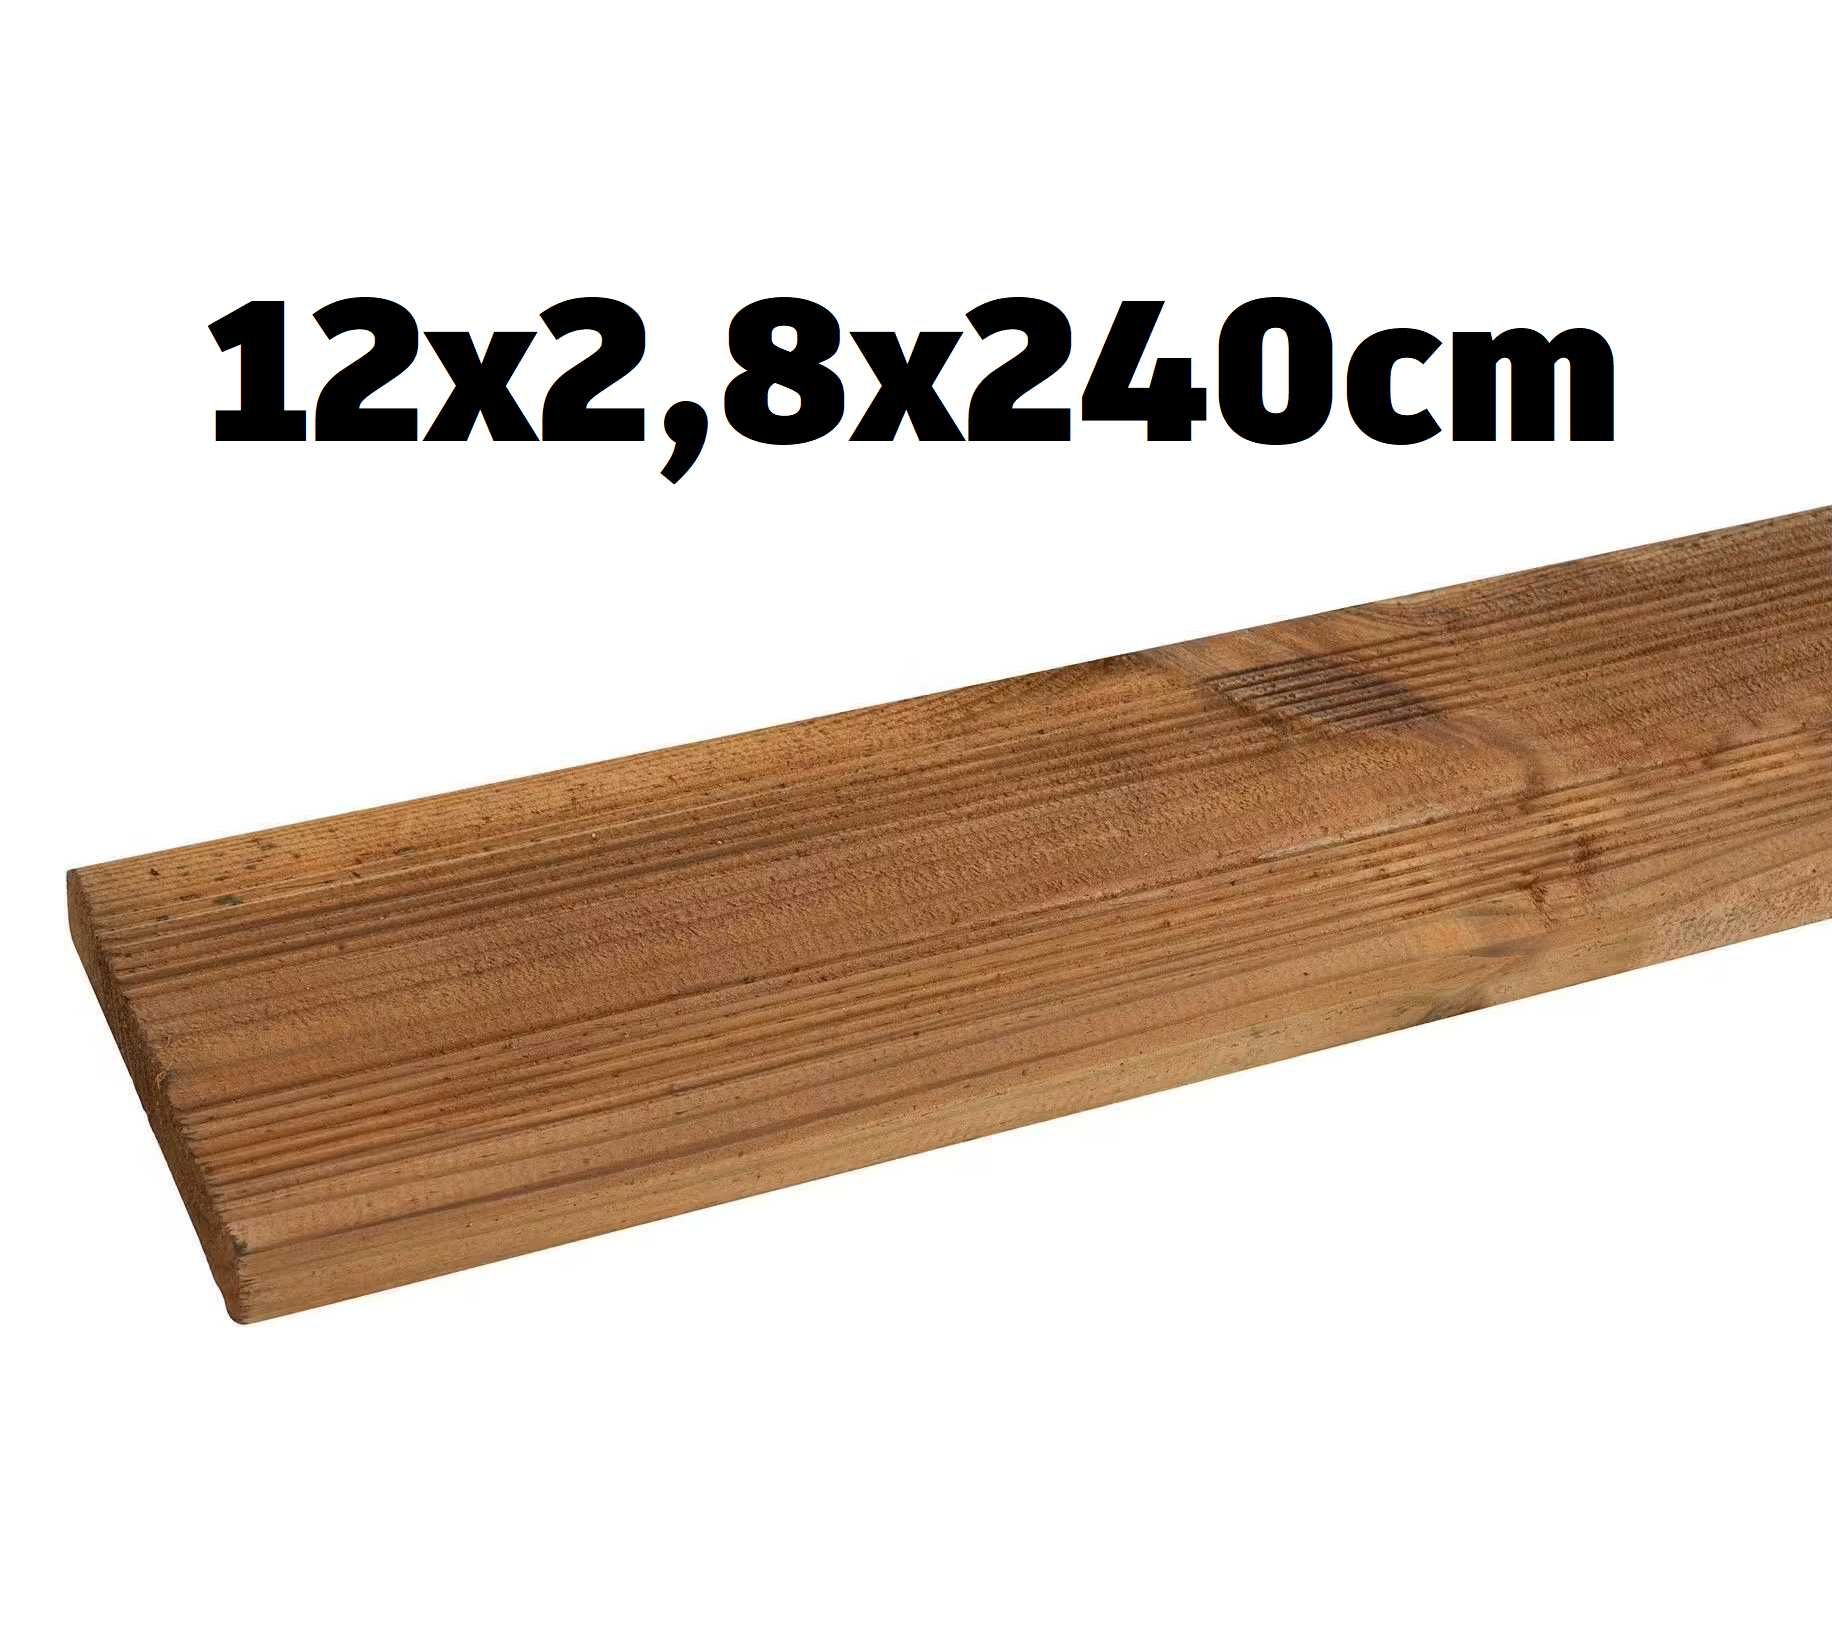 Drewniana deska tarasowa Choko 12x2,8x240cm, impregnowana na brązowo